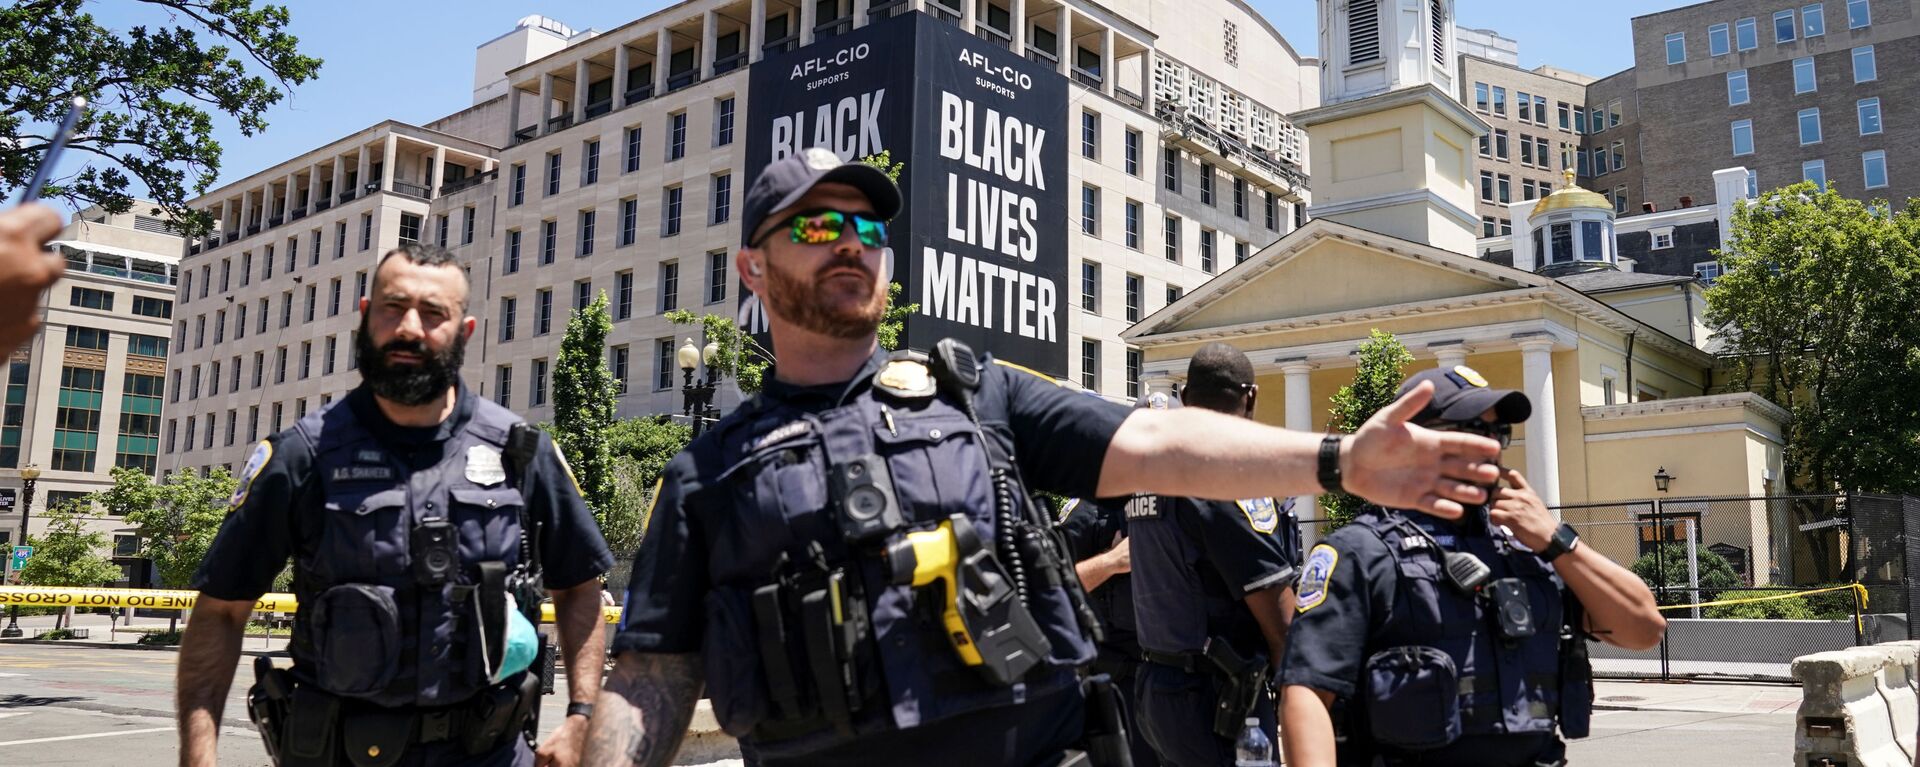 Washington DC'de Beyaz Saray yakınında 'Black Lives Matter' pankartı önünde polisler - Sputnik Türkiye, 1920, 25.06.2020